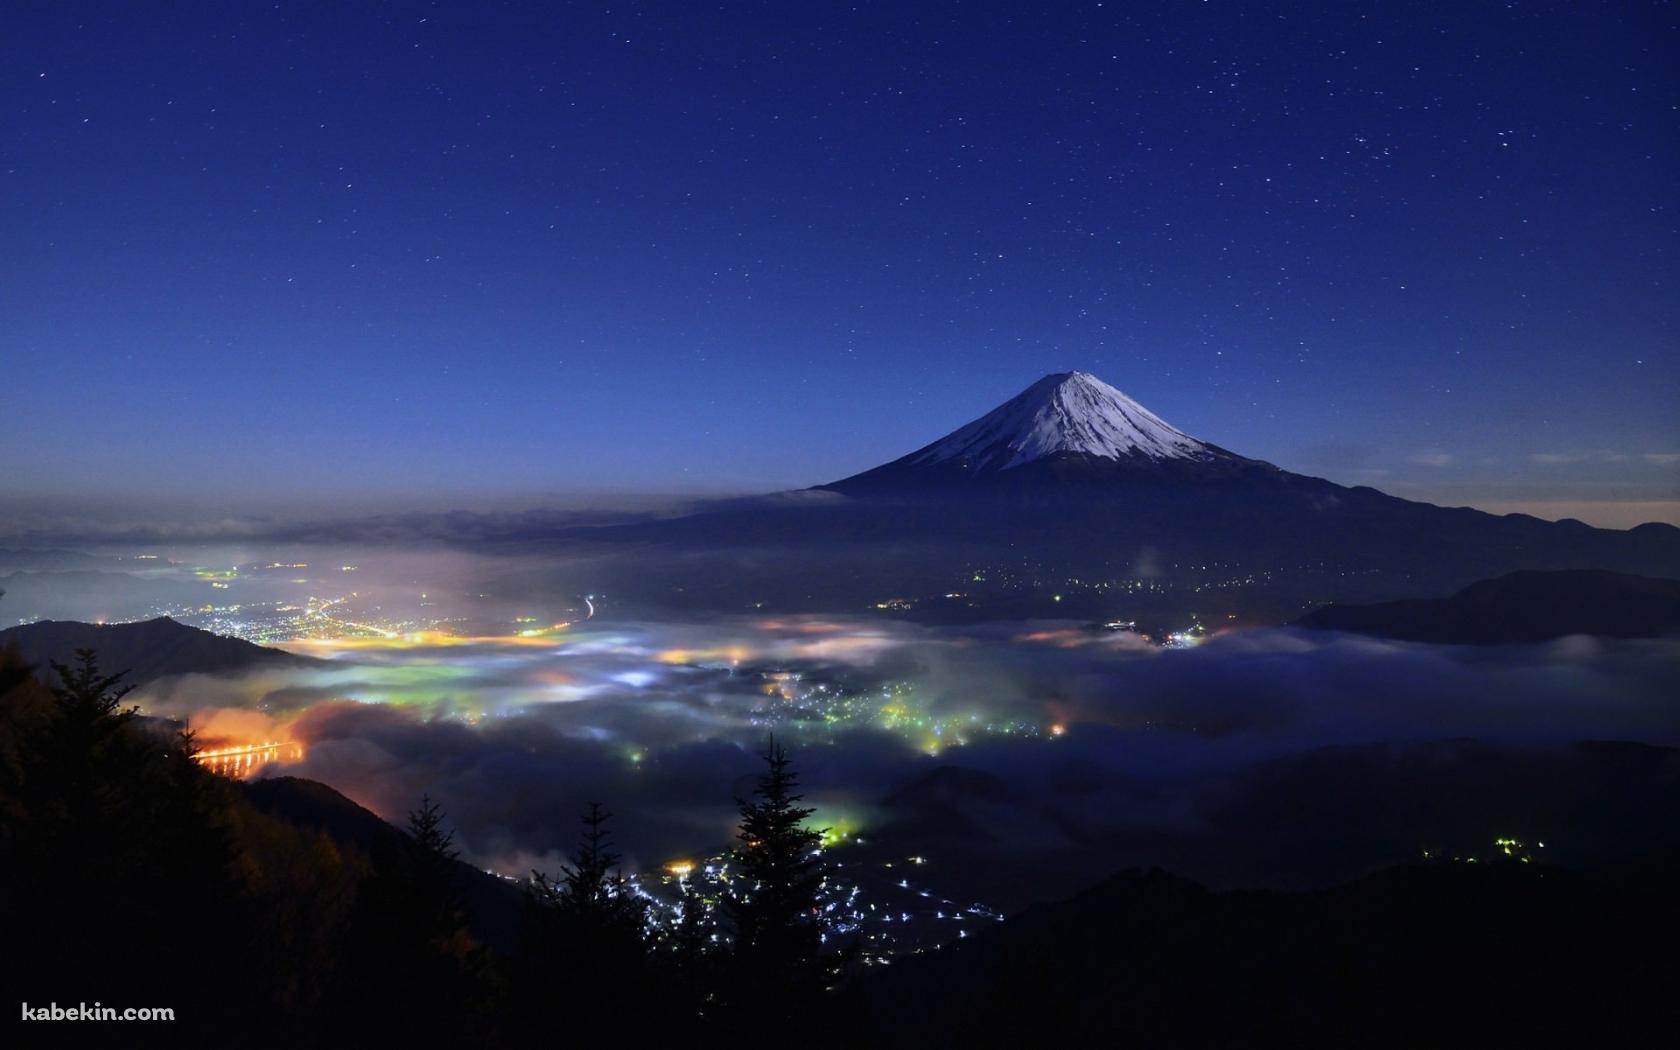 富士山と星空 日本 静岡県 山梨県の壁紙(1680px x 1050px) 高画質 PC・デスクトップ用